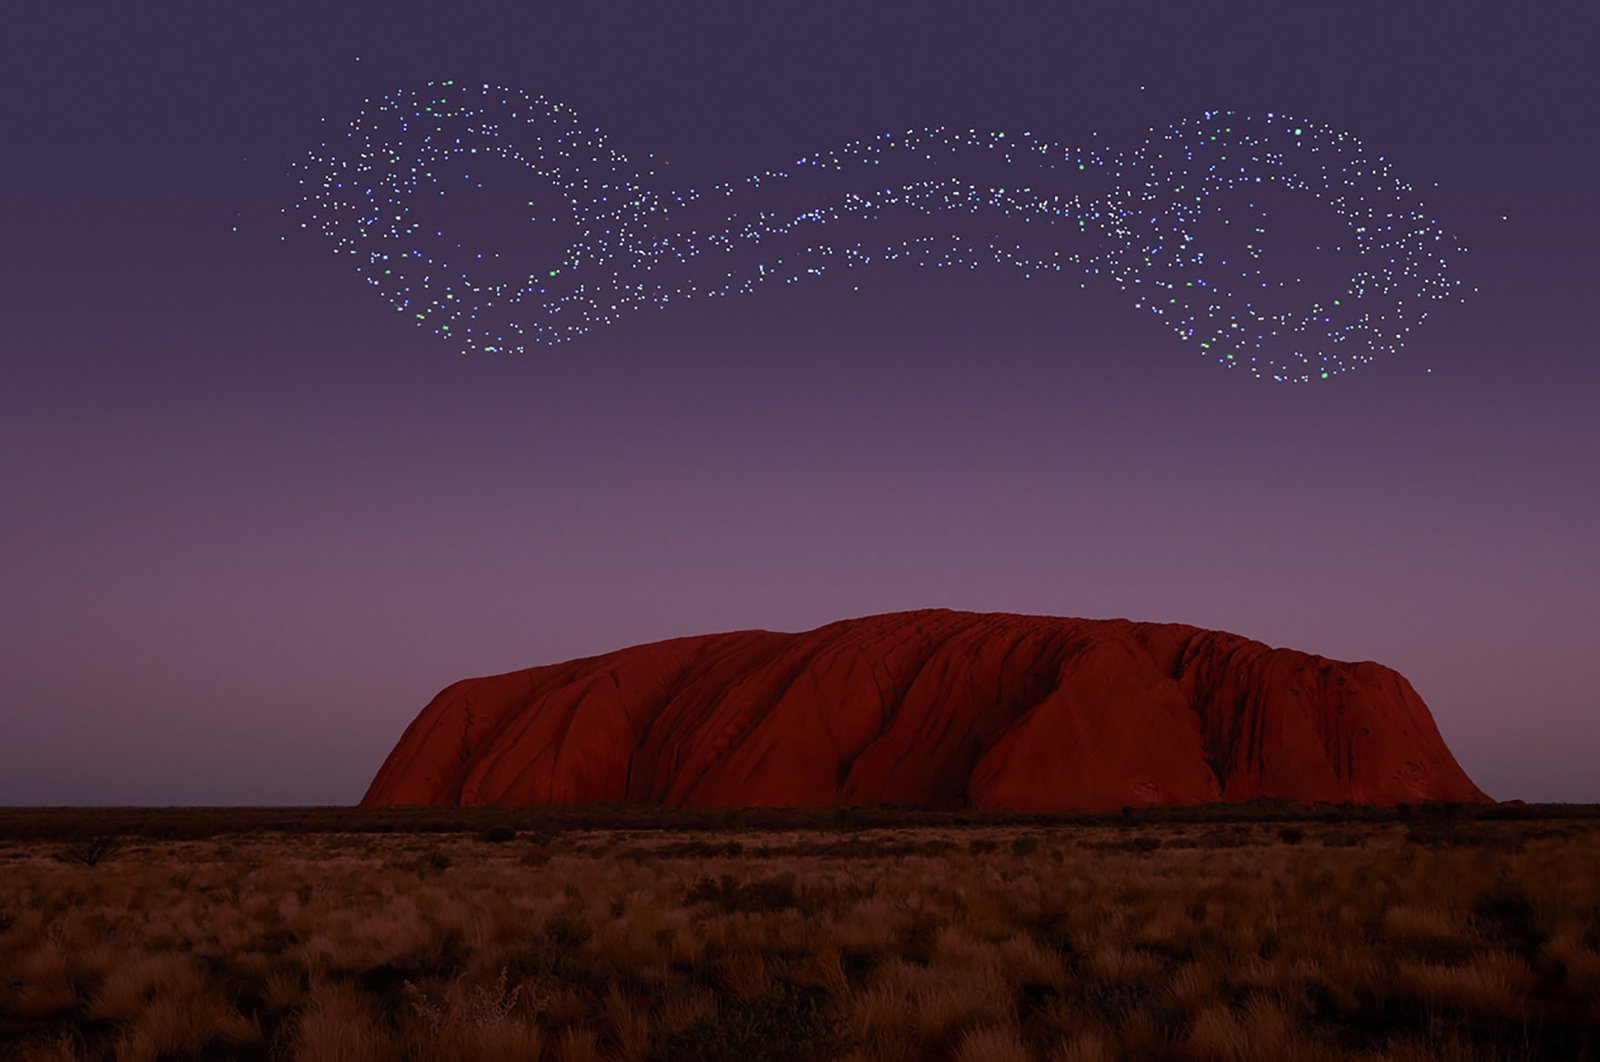 Kisah-kisah Aborigin kuno akan dihidupkan kembali dengan pertunjukan laser di Uluru